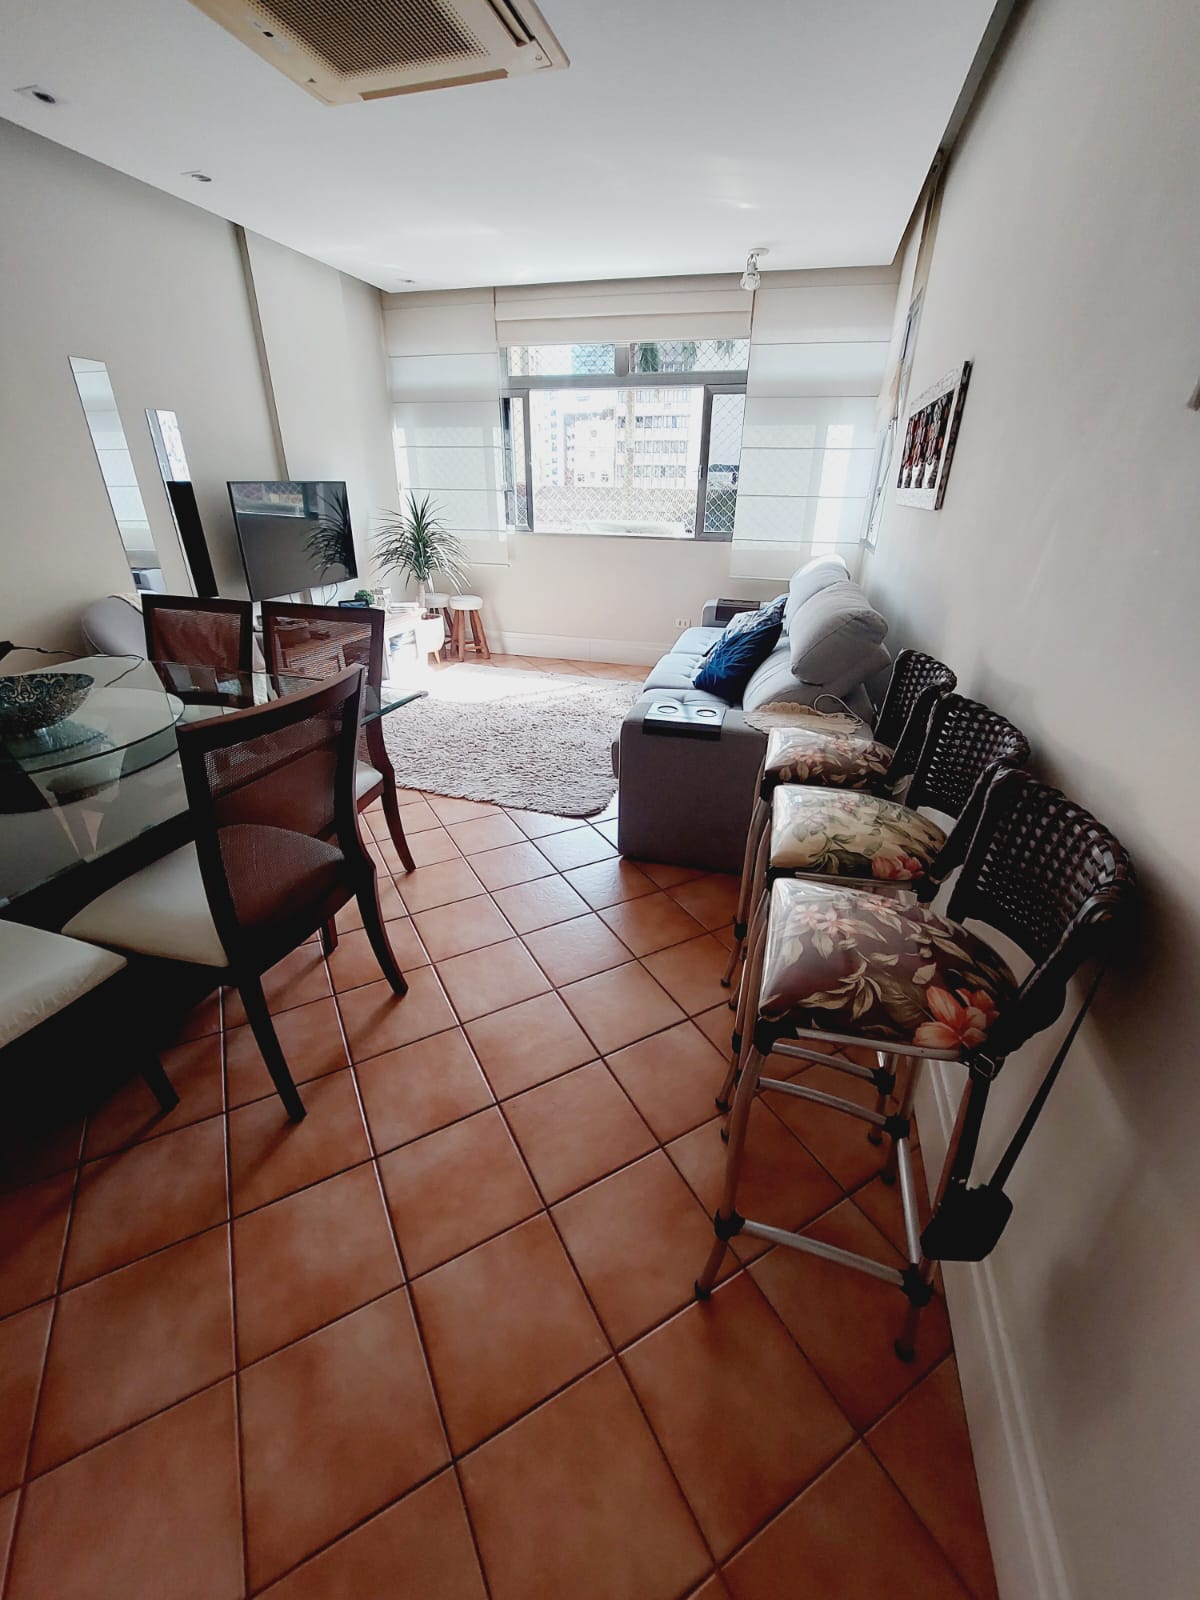 Foto do Imóvel - Lindo Apartamento 03 dorms no Coração do Gonzaga. c/ vaga demarcada.